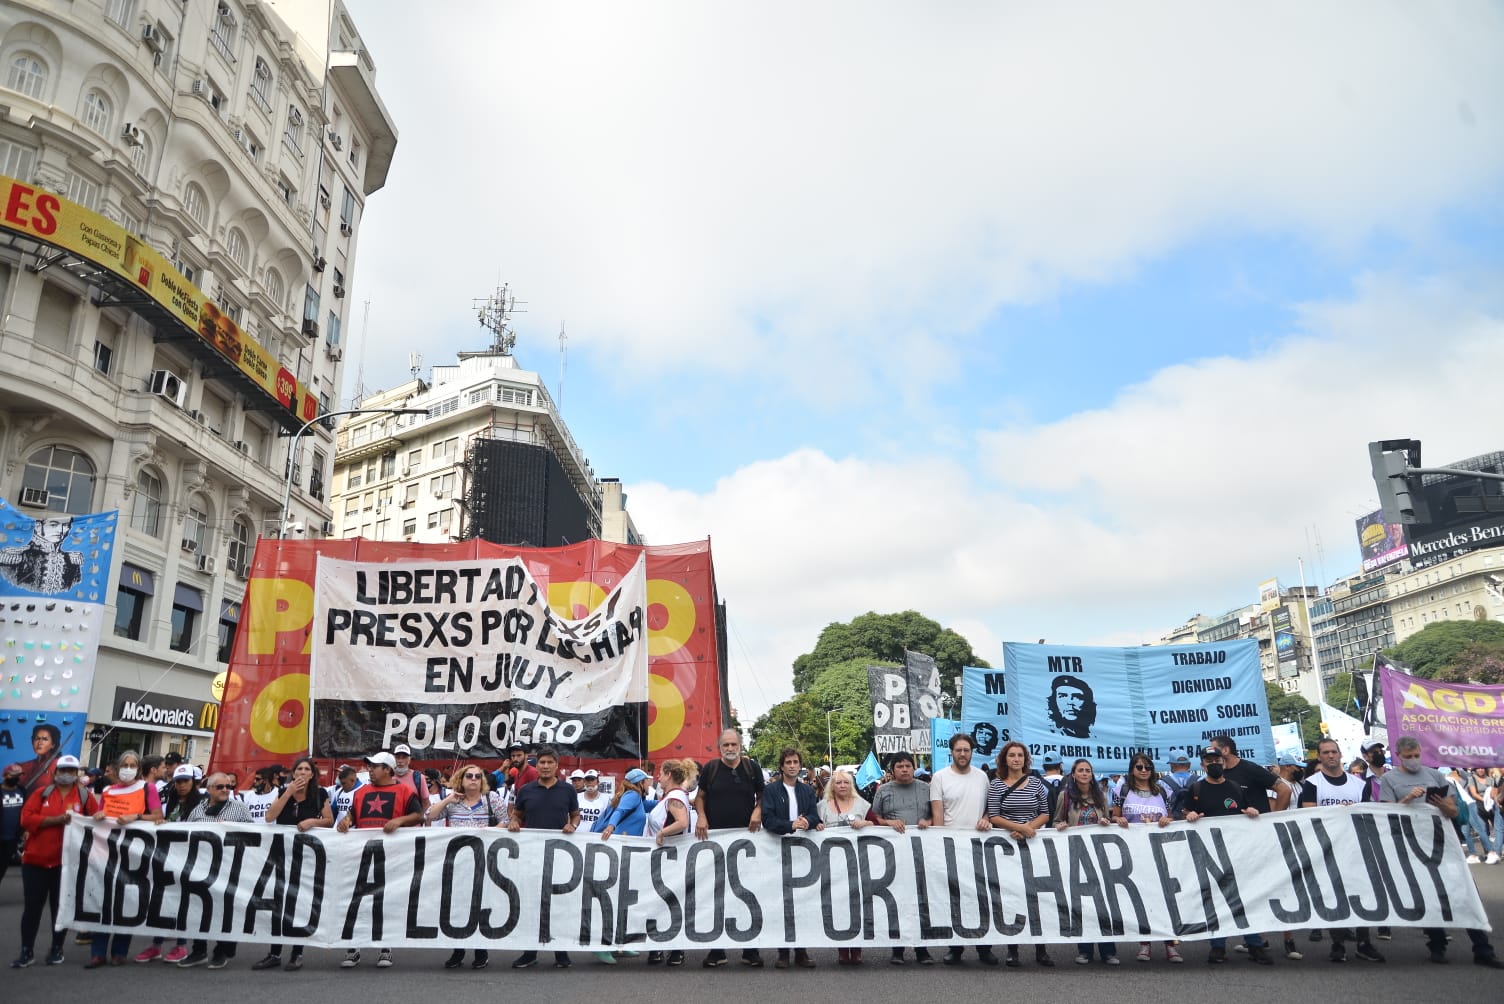 Abogades de Derechos Humanos solicitaron audiencia ante la CIDH contra la persecución en Jujuy